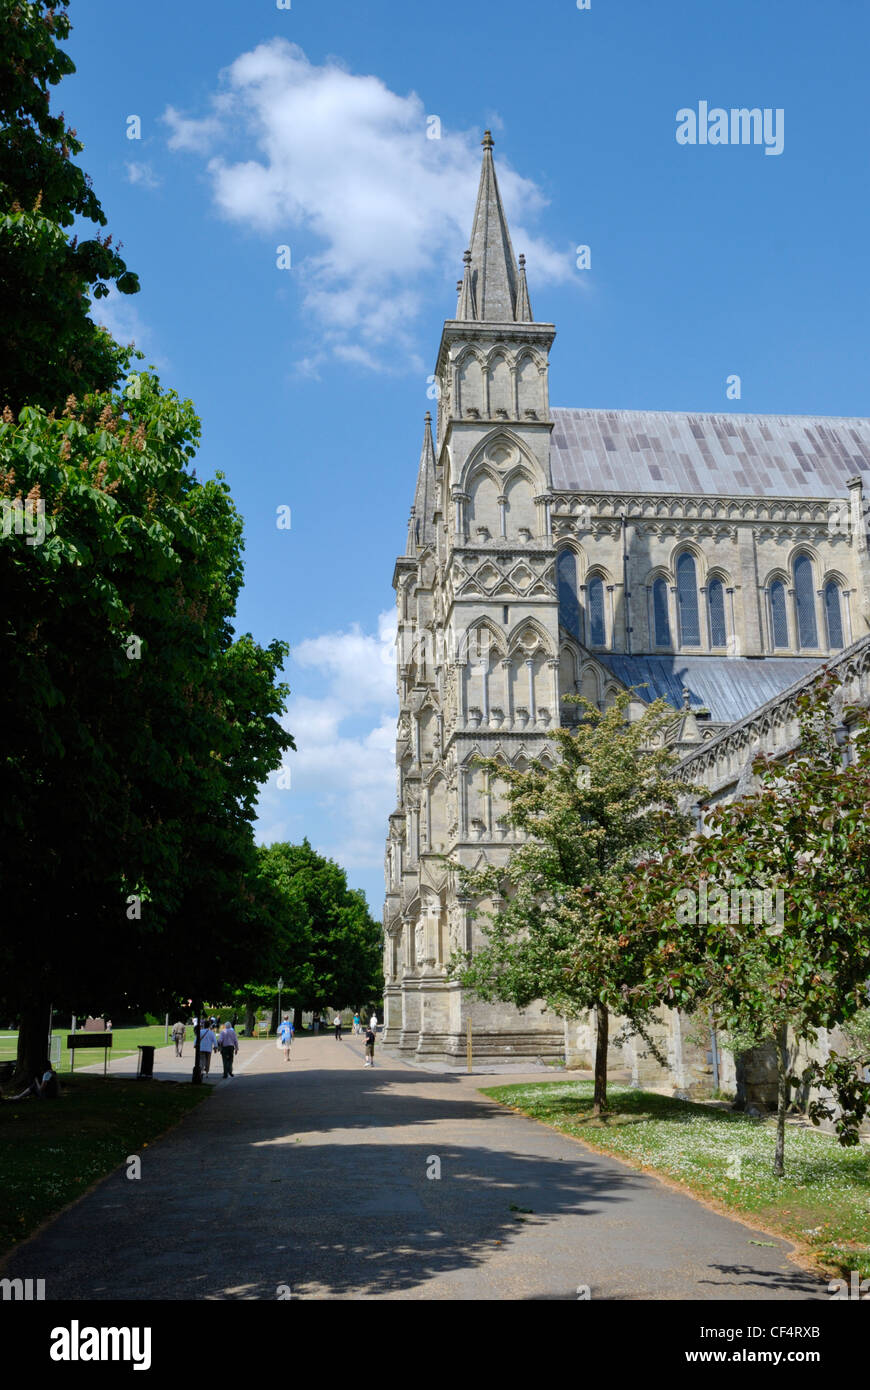 La cathédrale de Salisbury, l'une des plus belles cathédrales médiévales en Grande-Bretagne. Banque D'Images